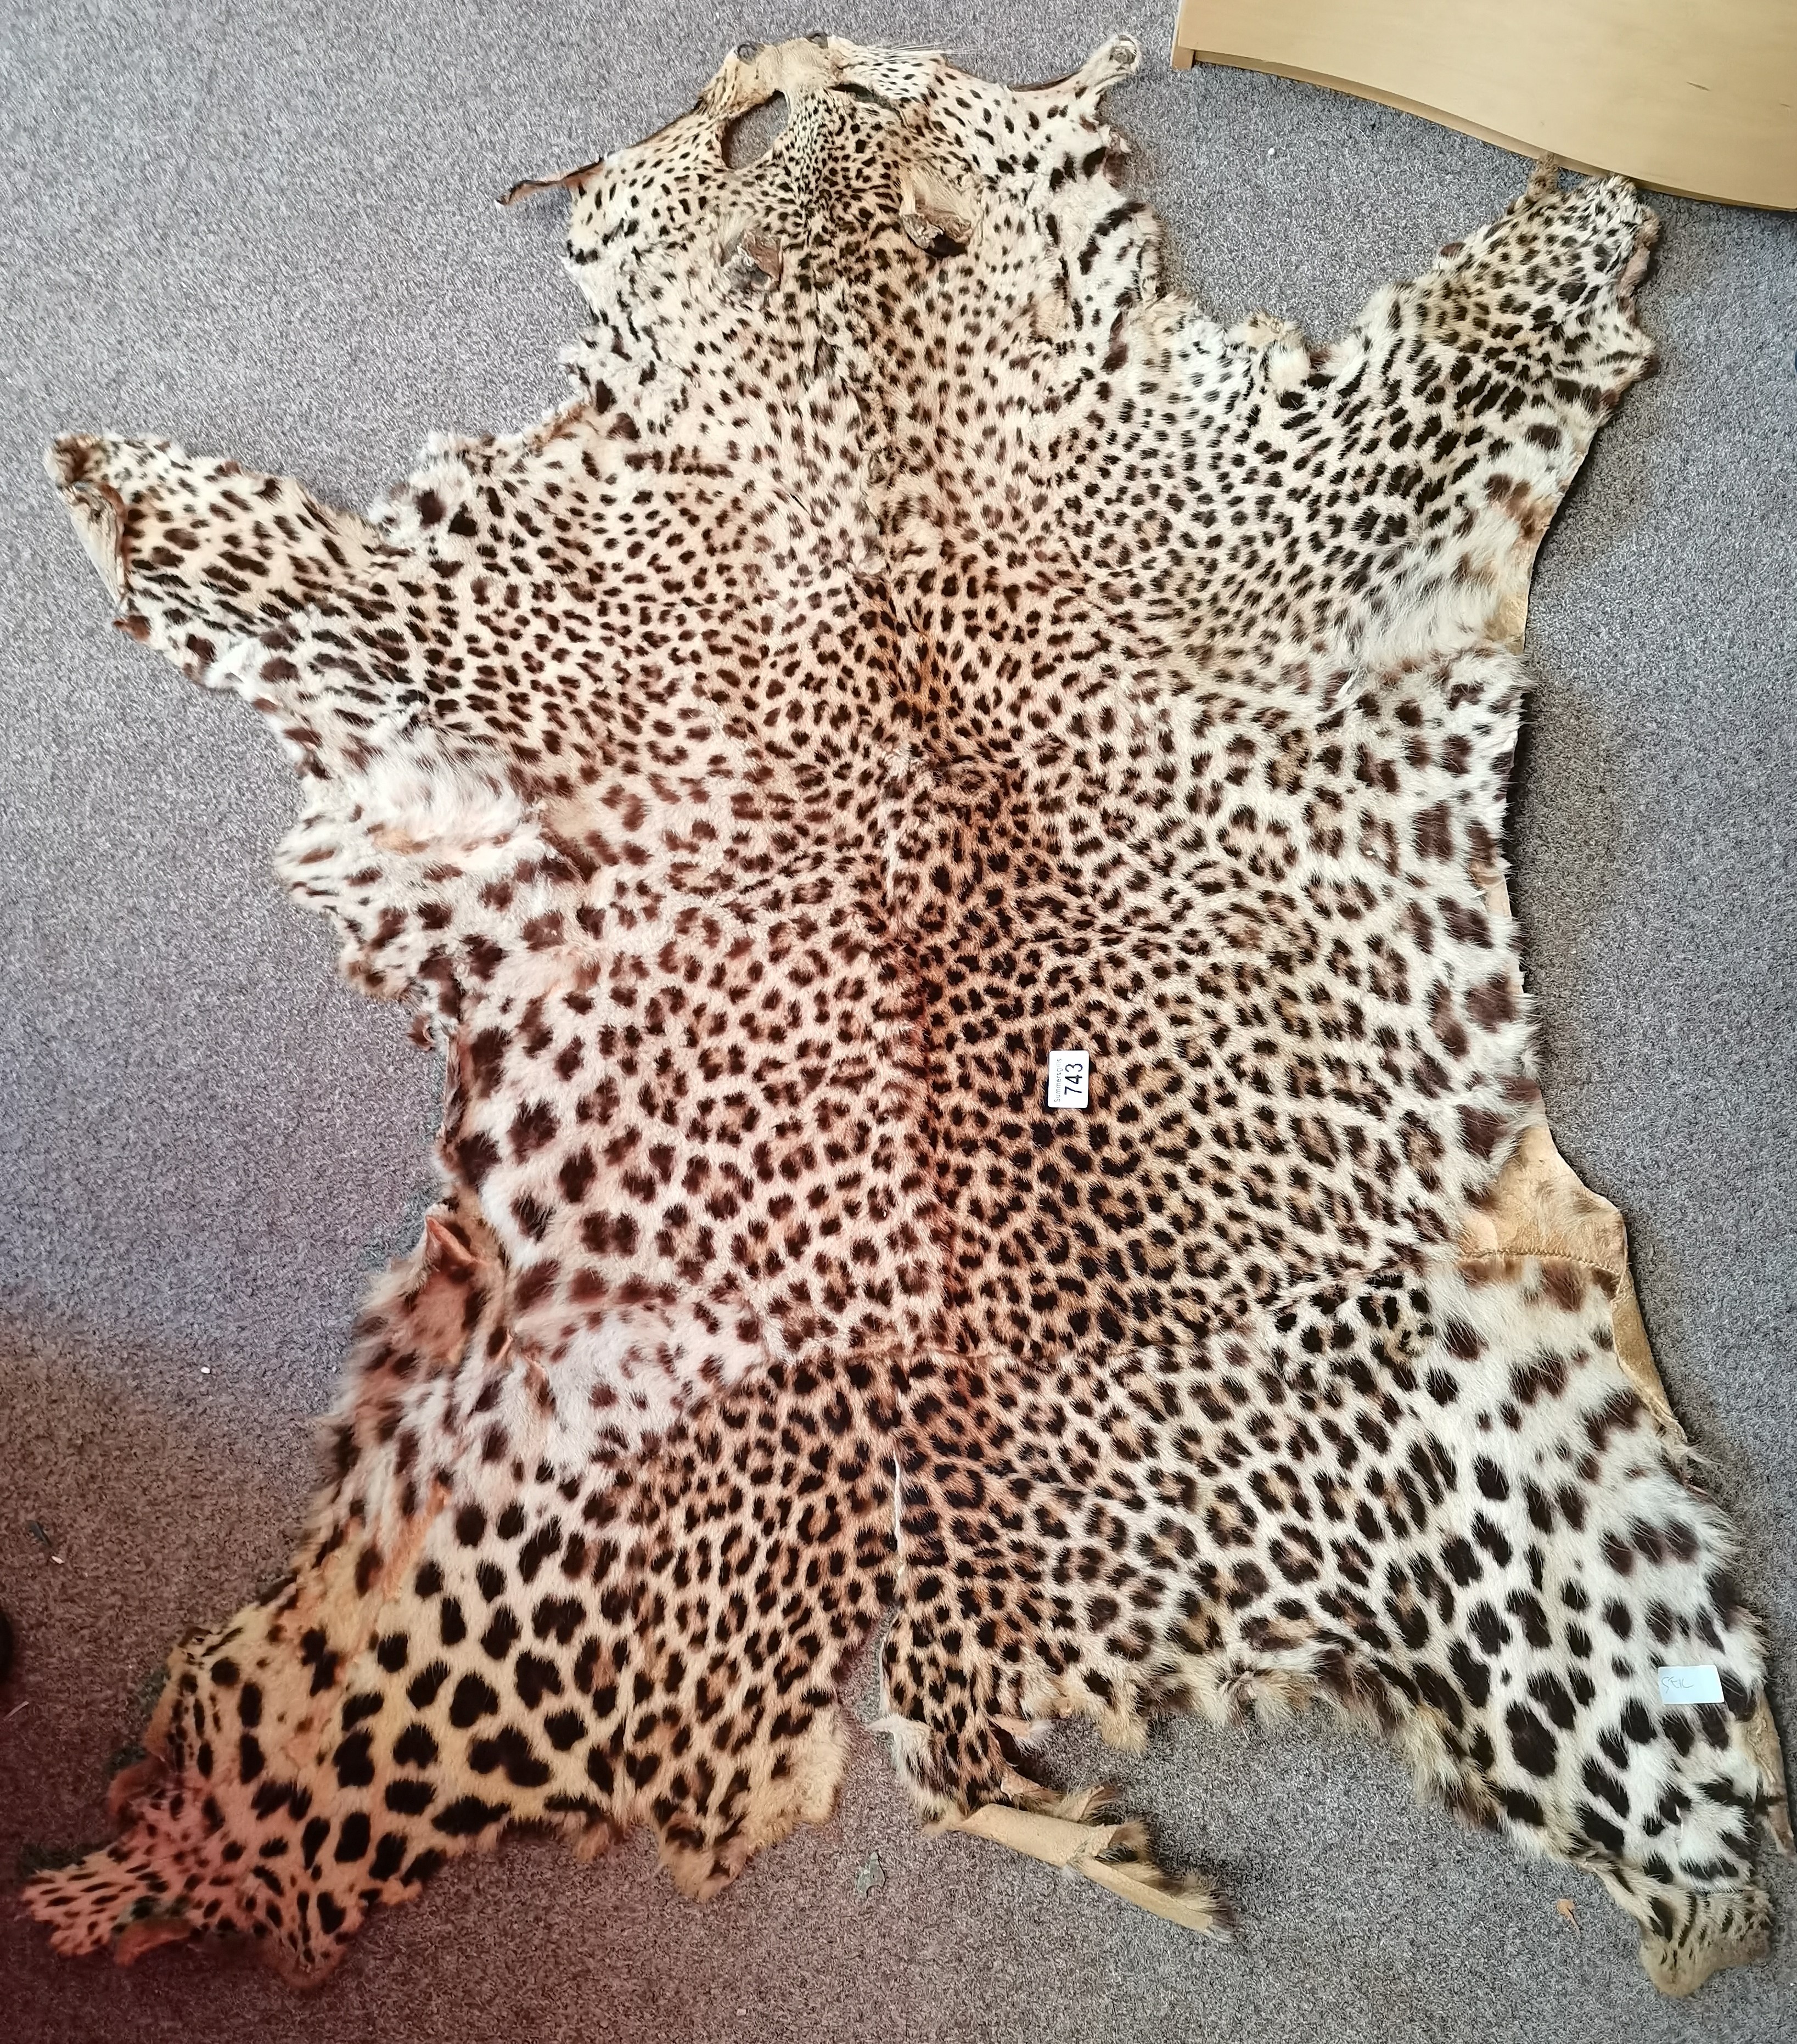 Victorian Leopard skin 1.4m long